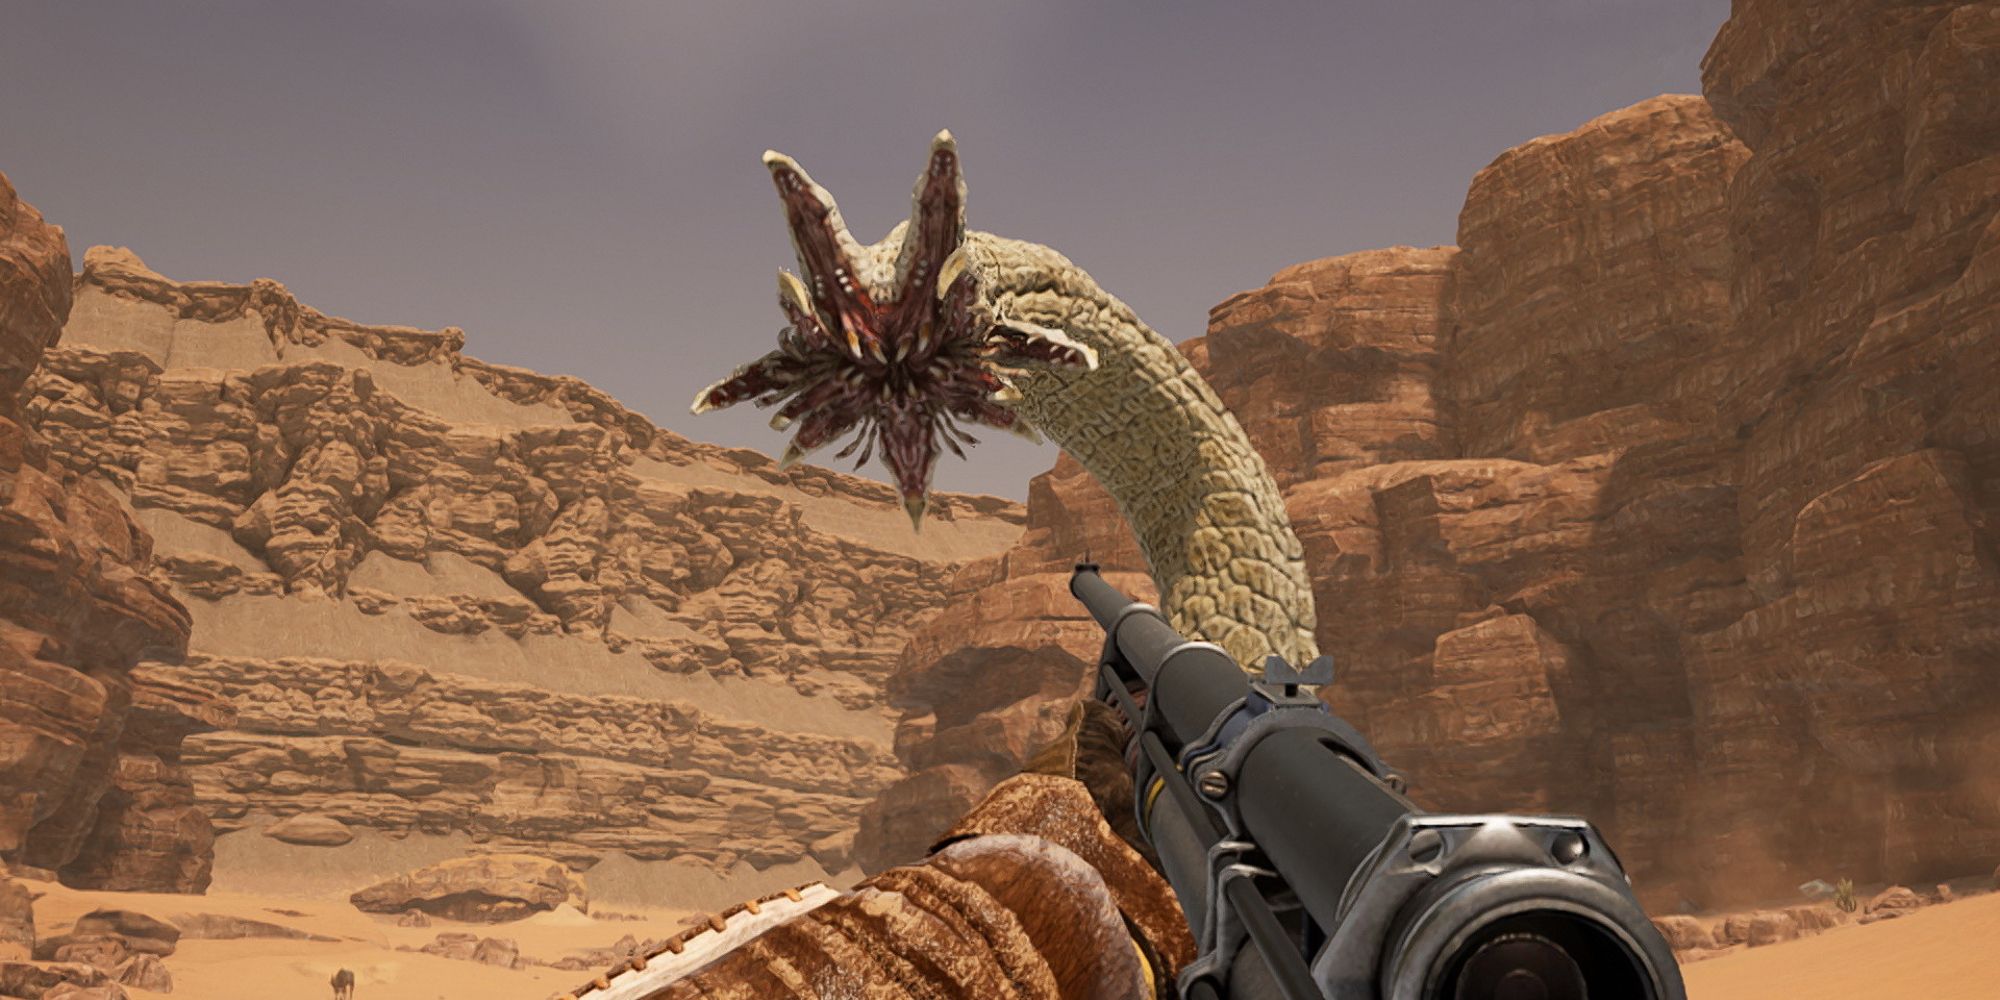 player fighting an alien monster in the desert